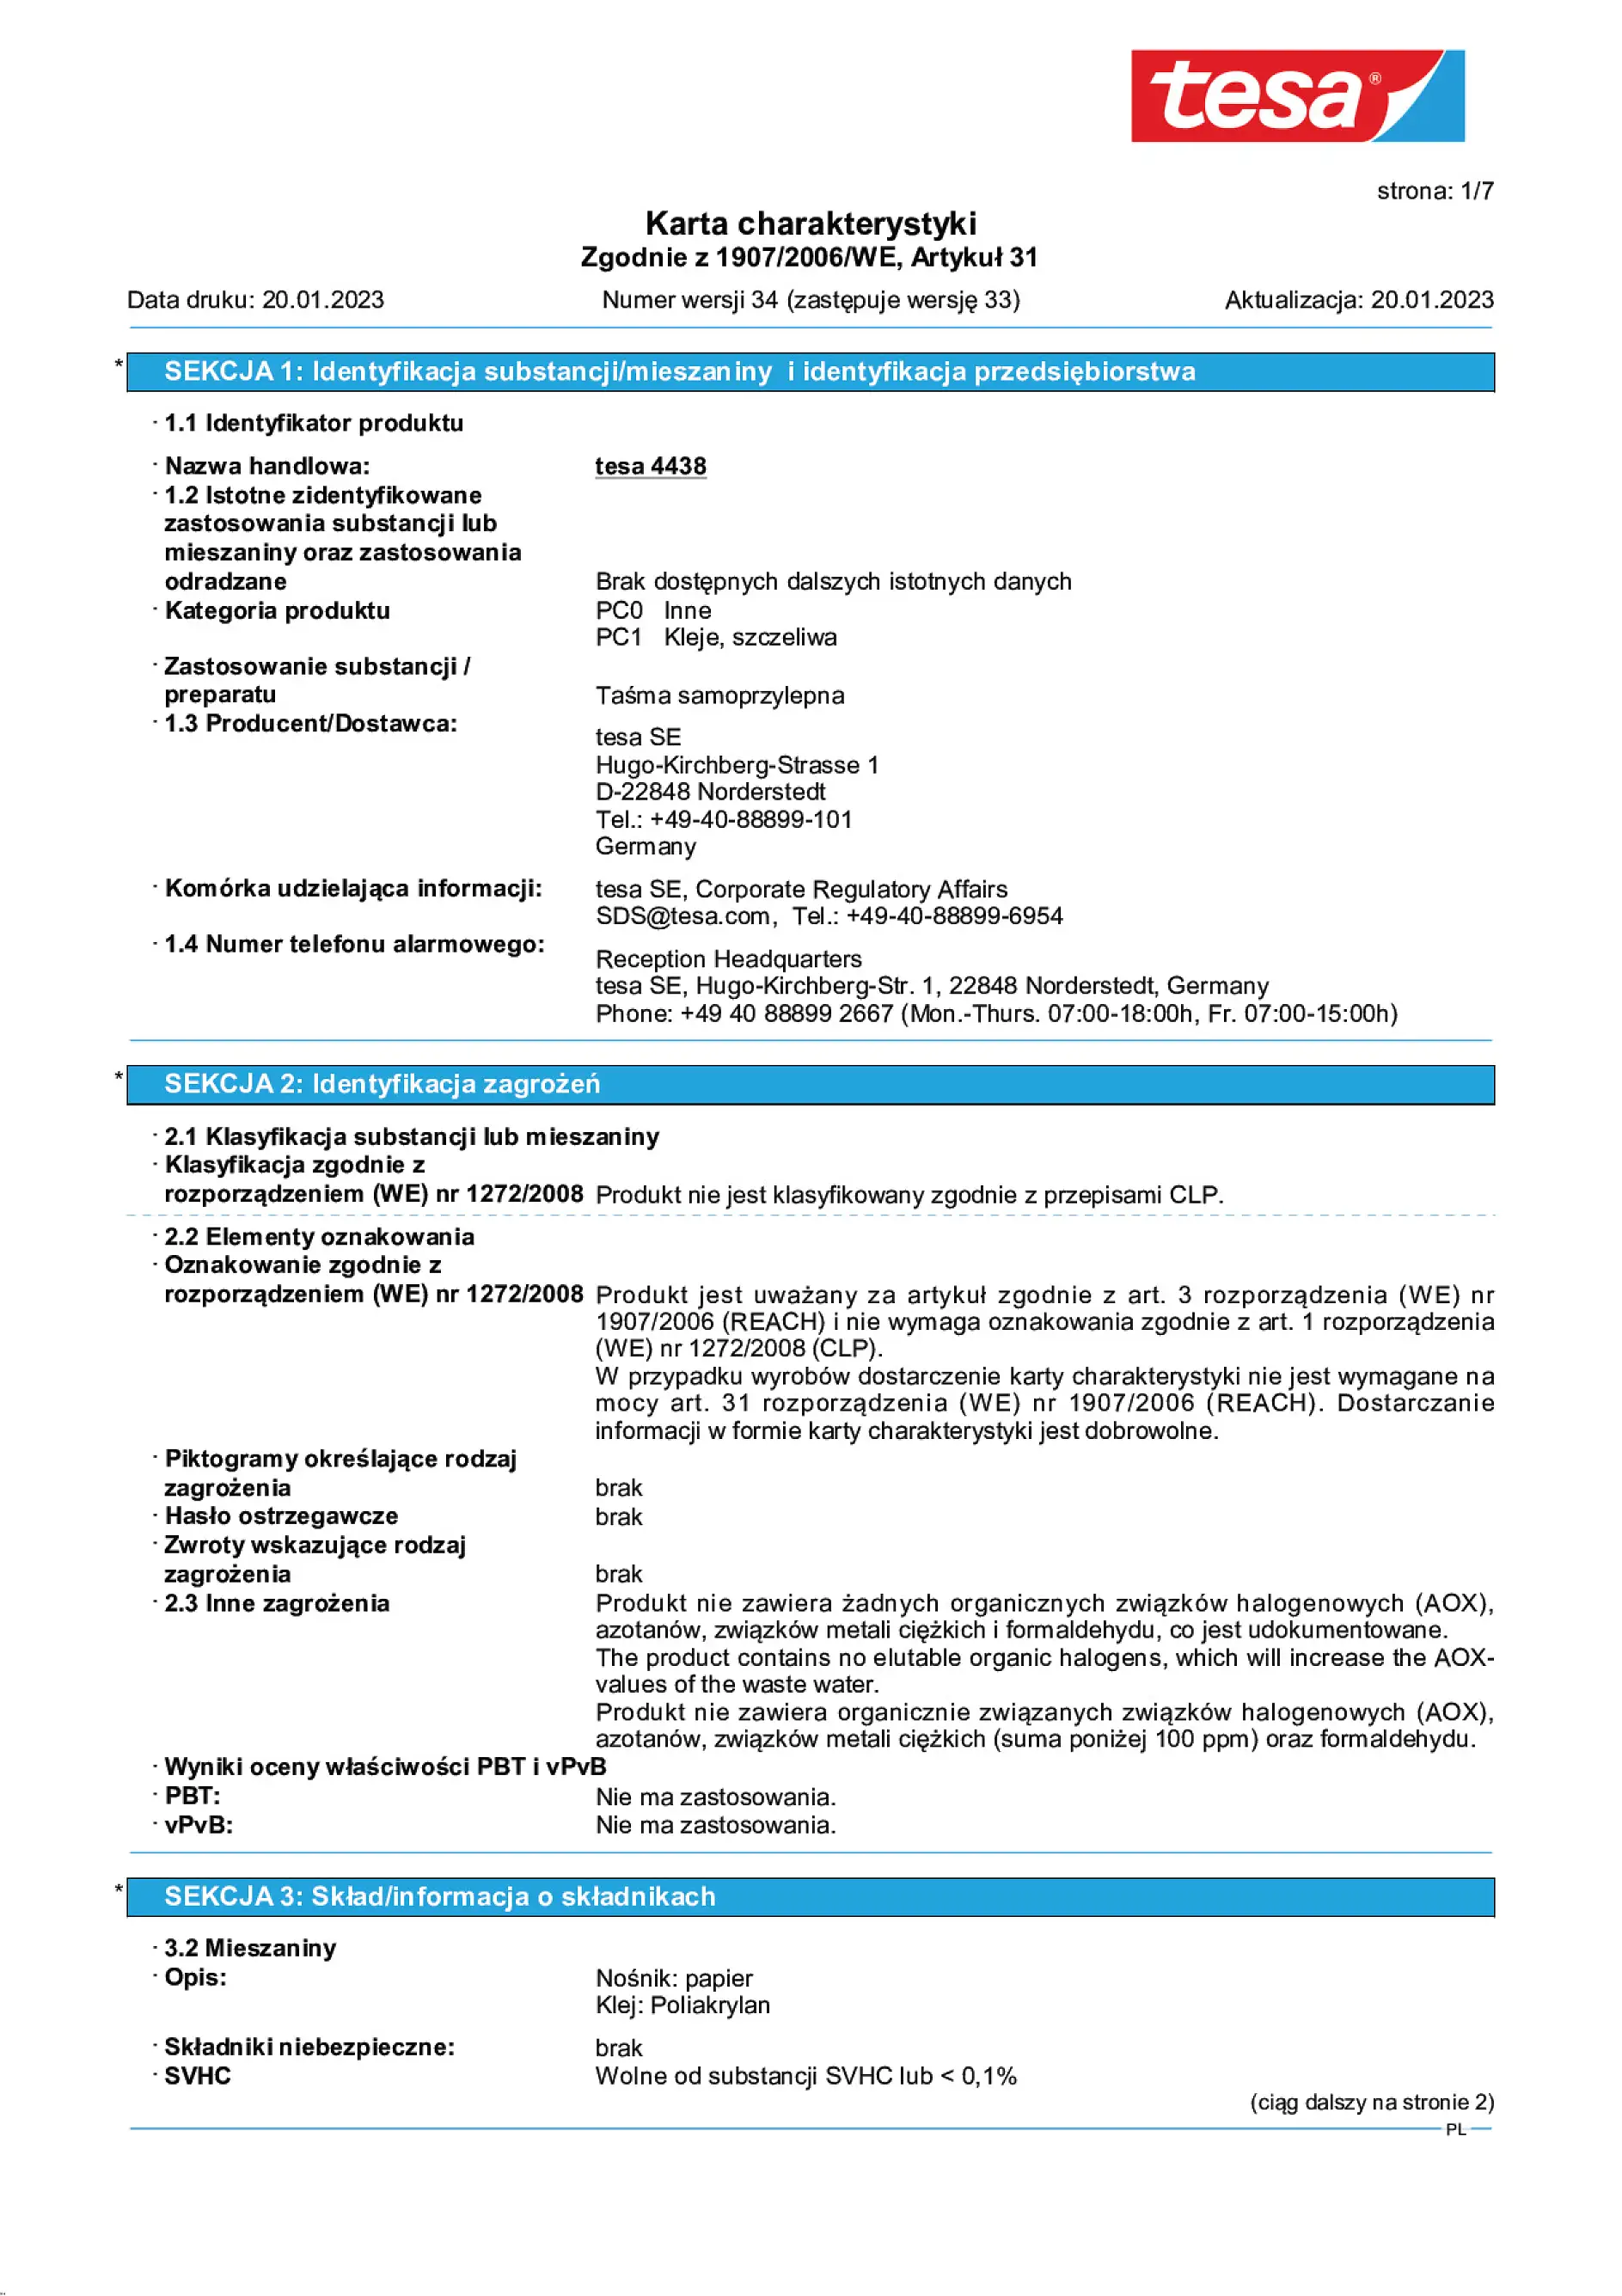 Safety data sheet_tesa® Professional 04438_pl-PL_v34